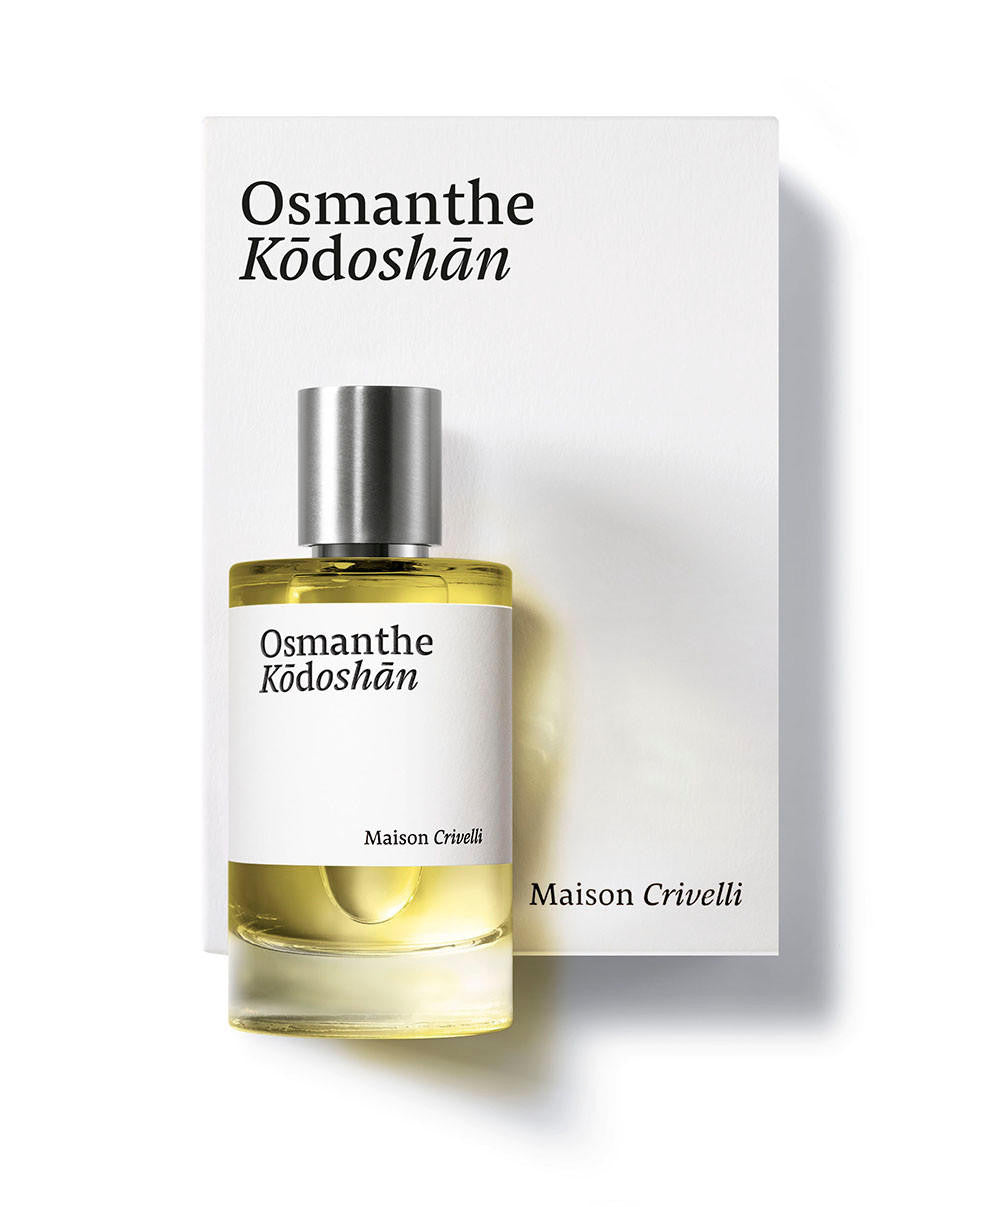 Maison Crivelli MAISON CRIVELLI Osmanthe Kodoshan Eau de Parfum 